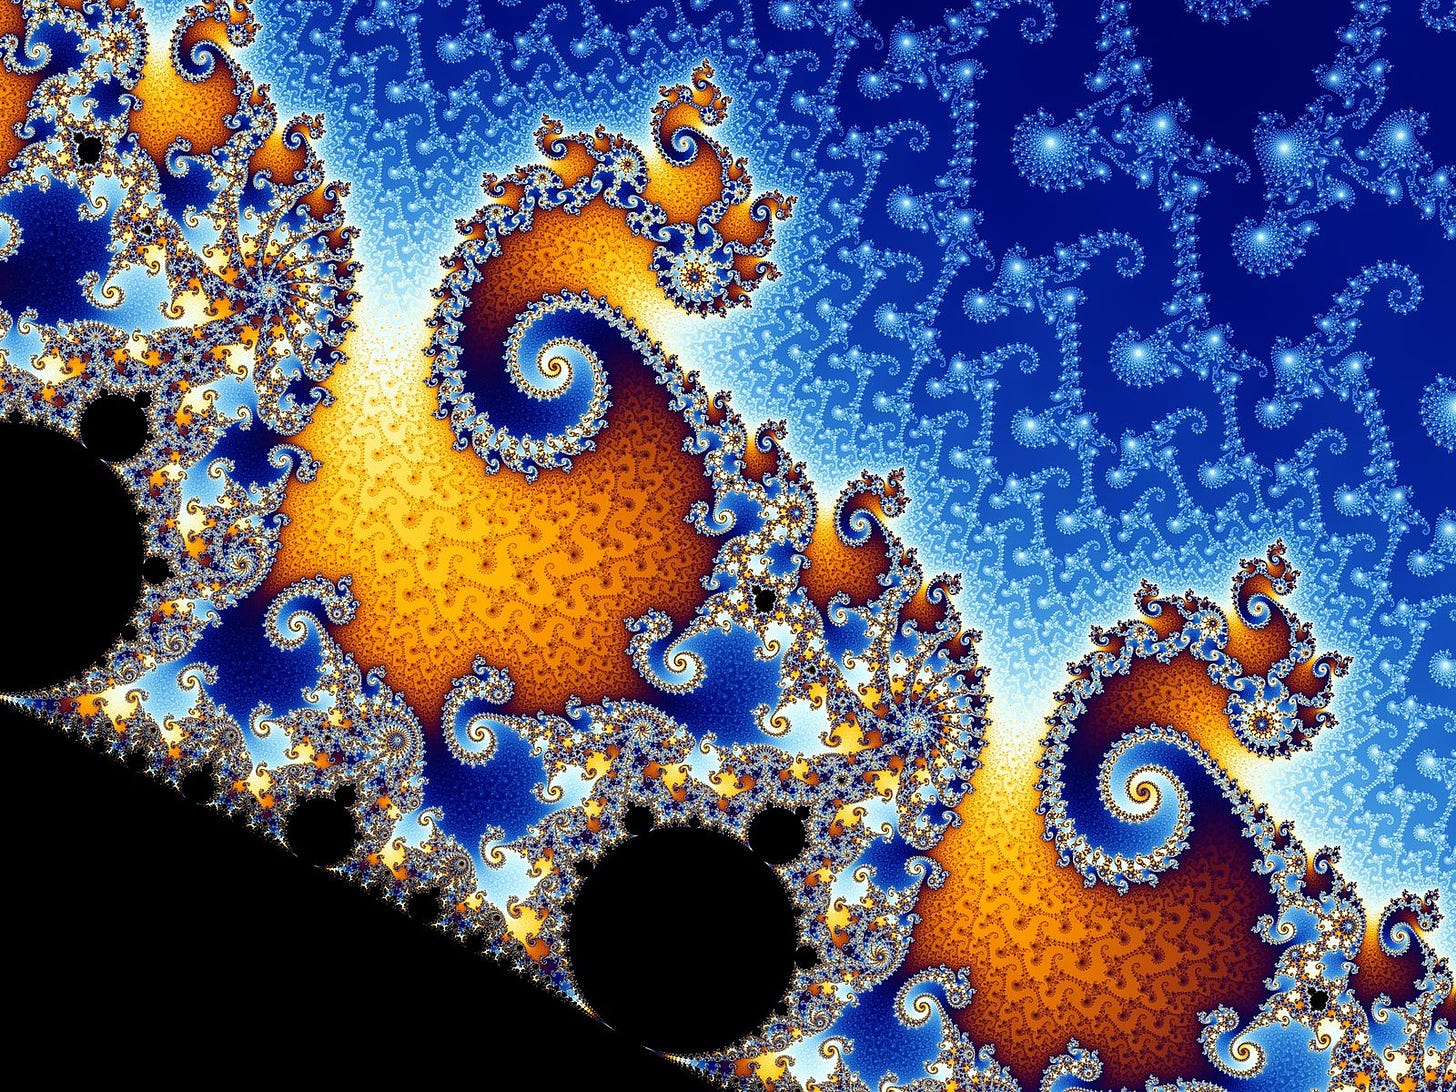  A mathematically perfect fractal pattern (Source: Wikipedia)